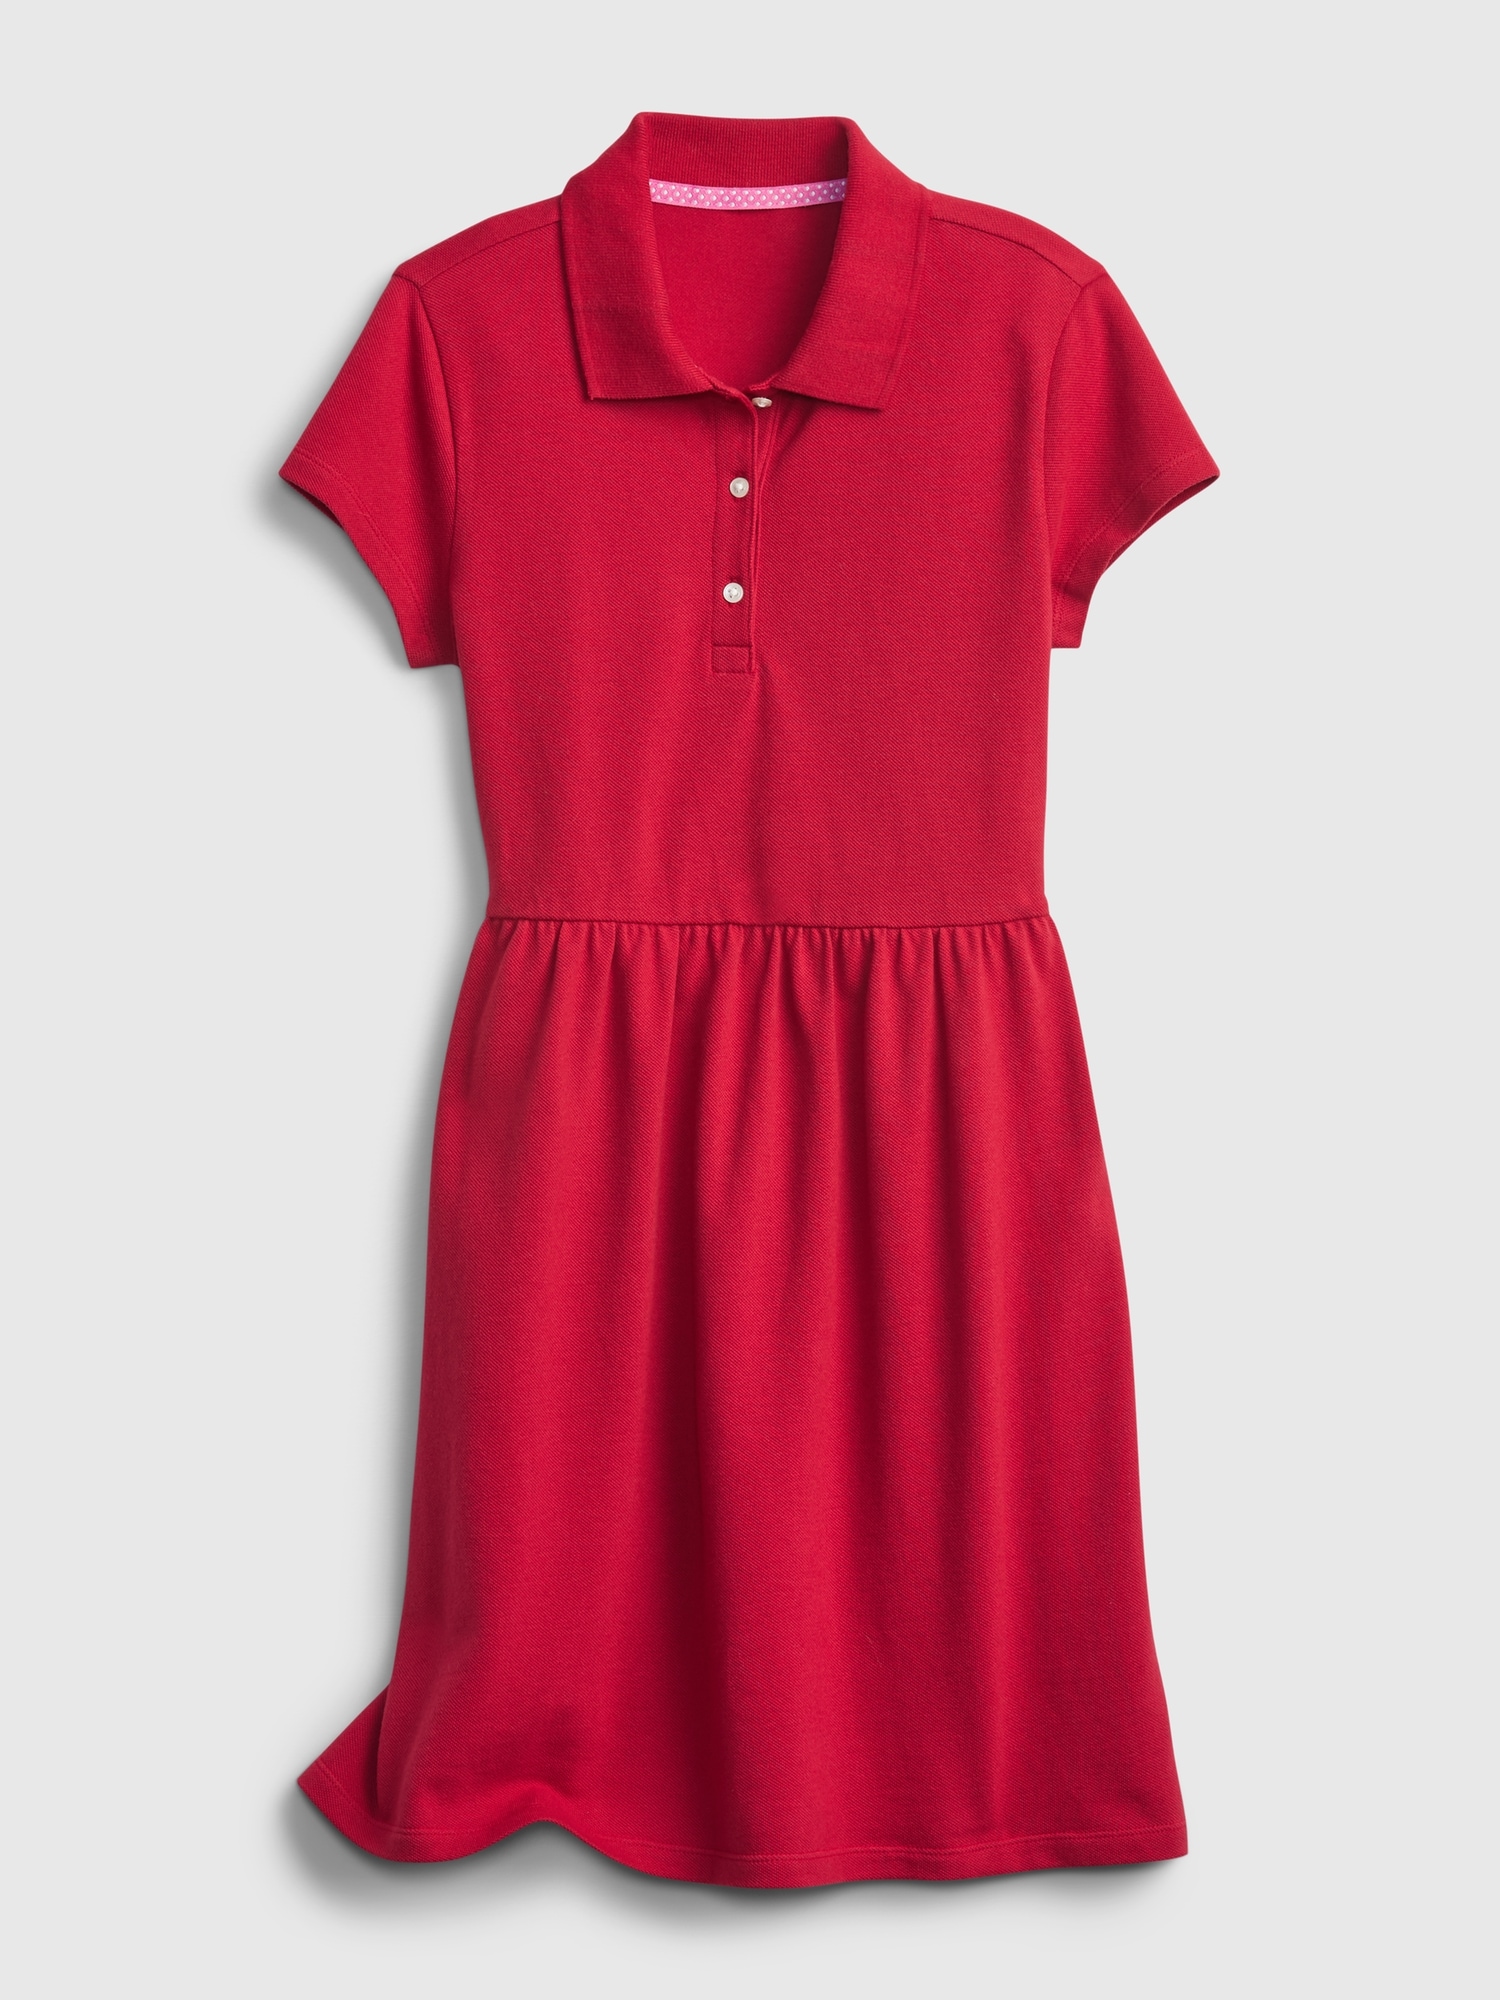 Kids Organic Cotton Uniform Polo Dress | Gap